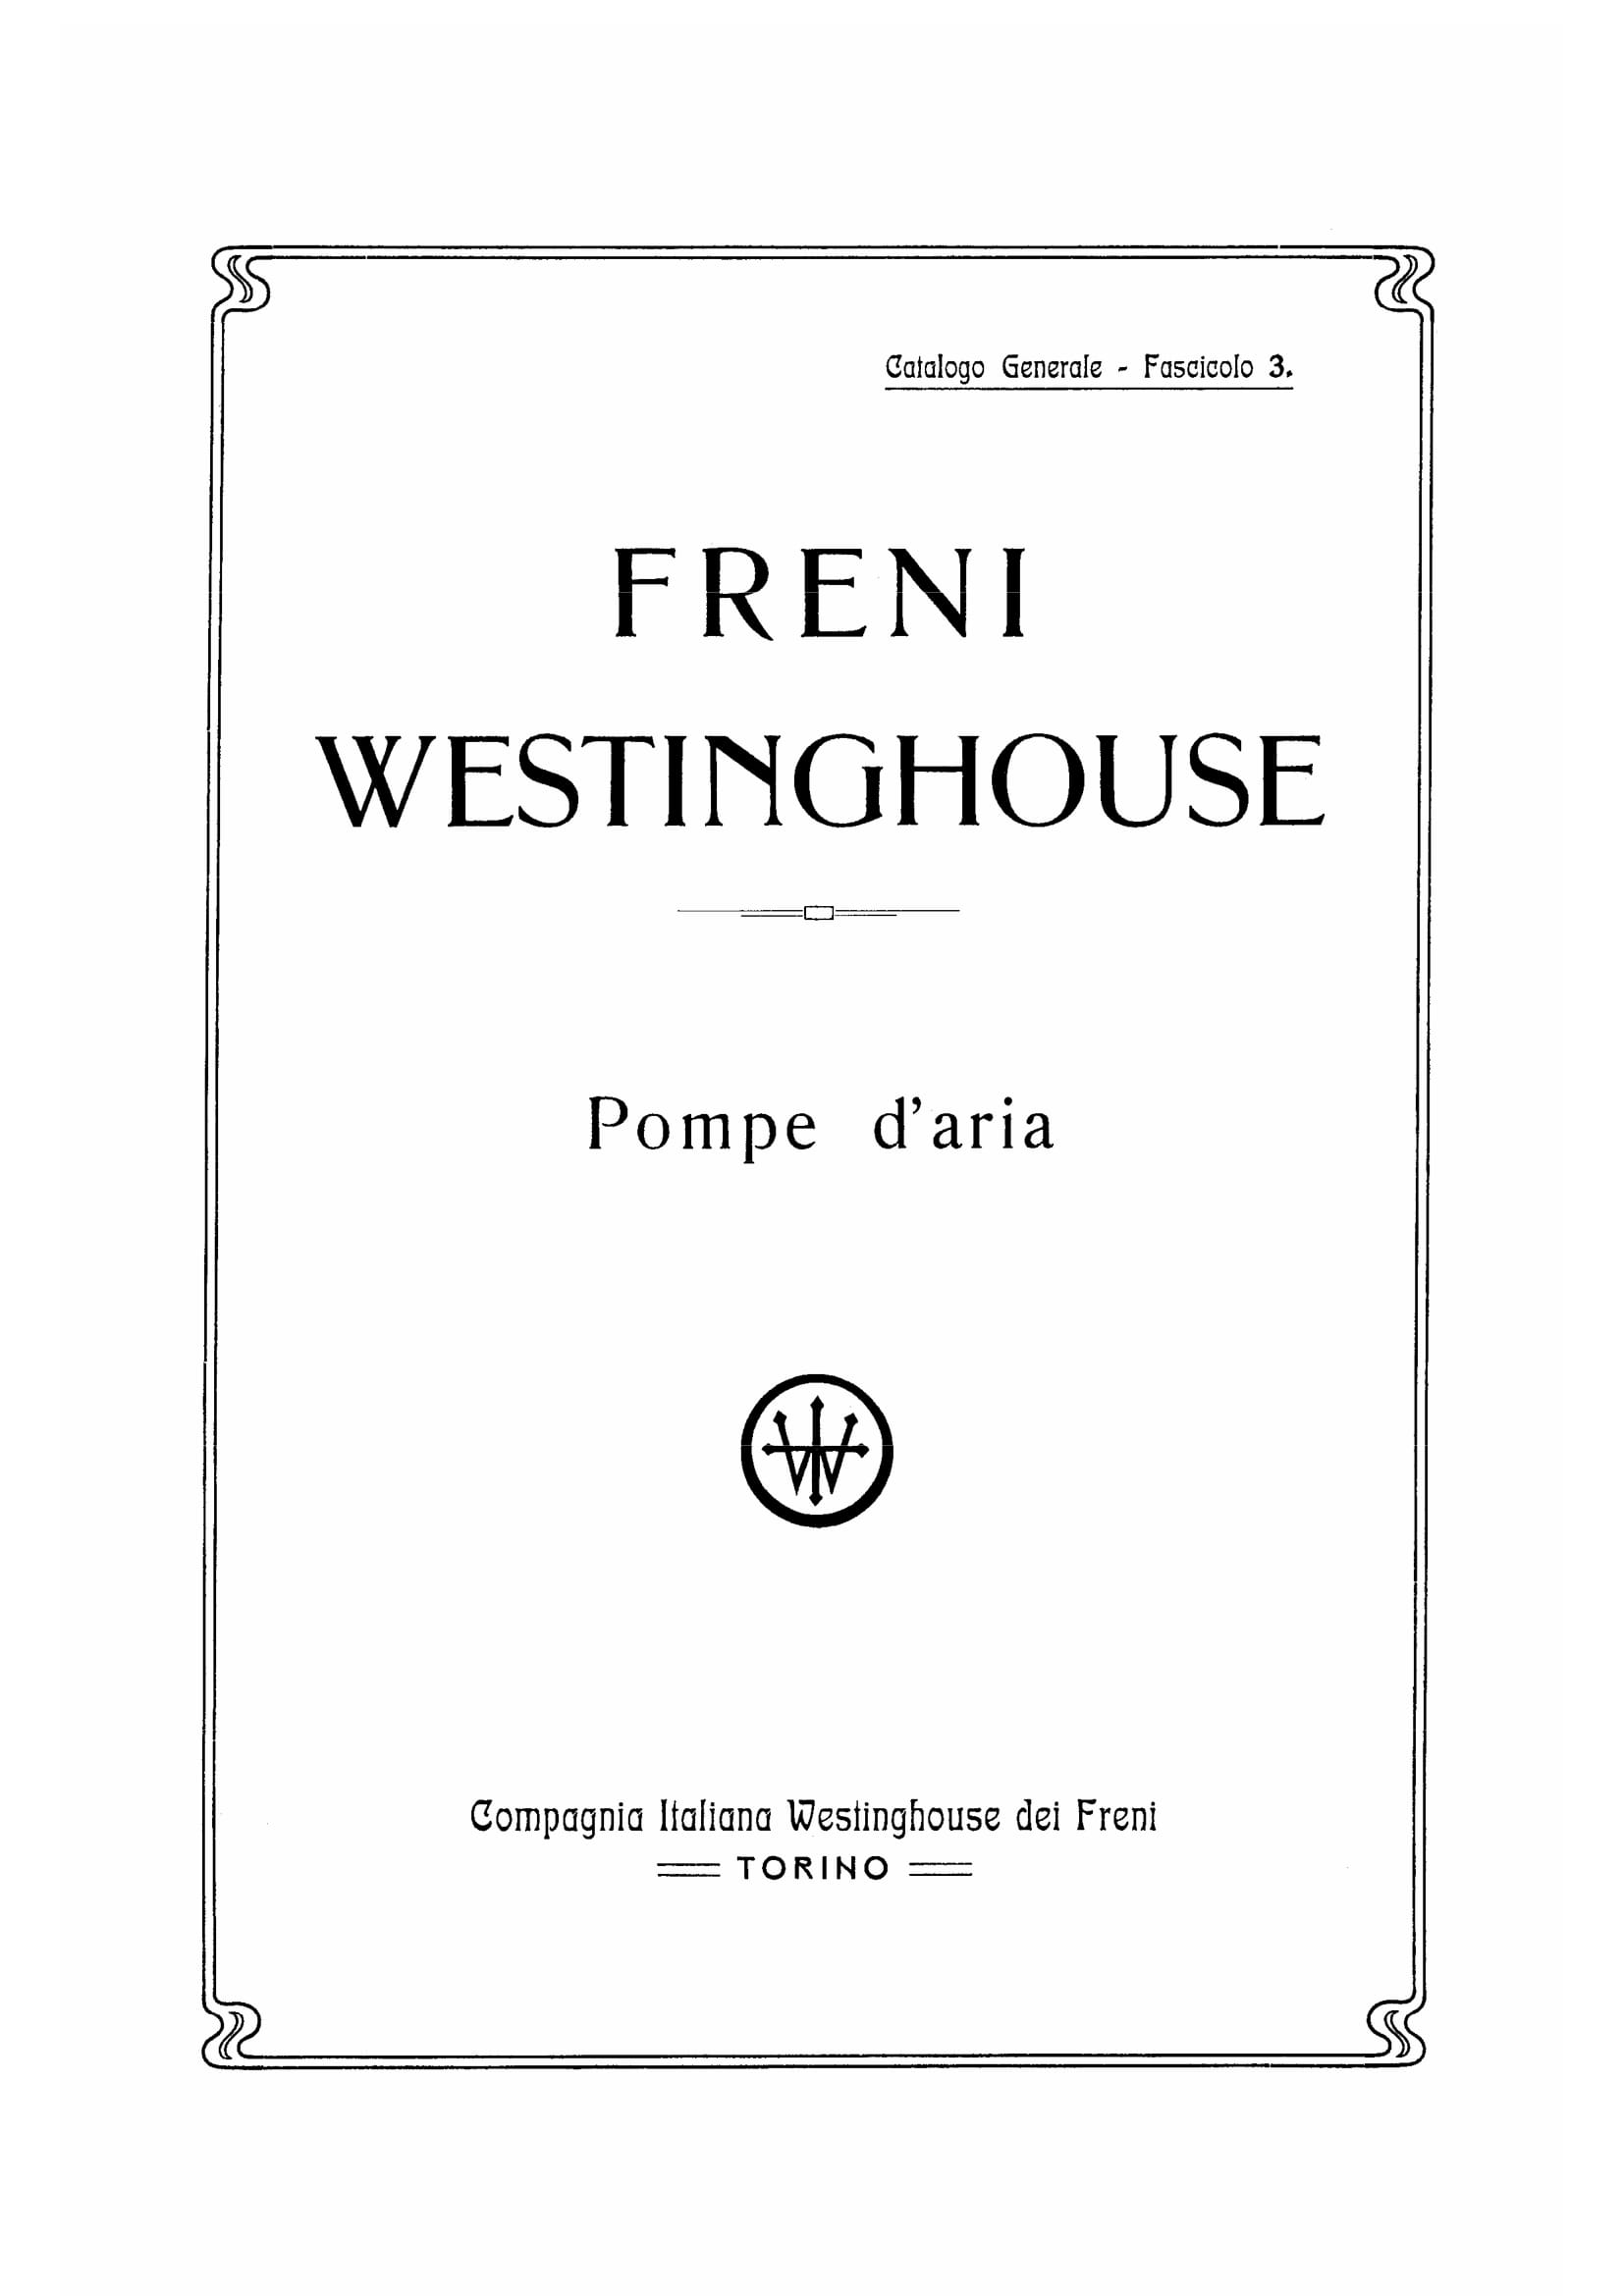 CATALOGO WESTINGHOUSE-041